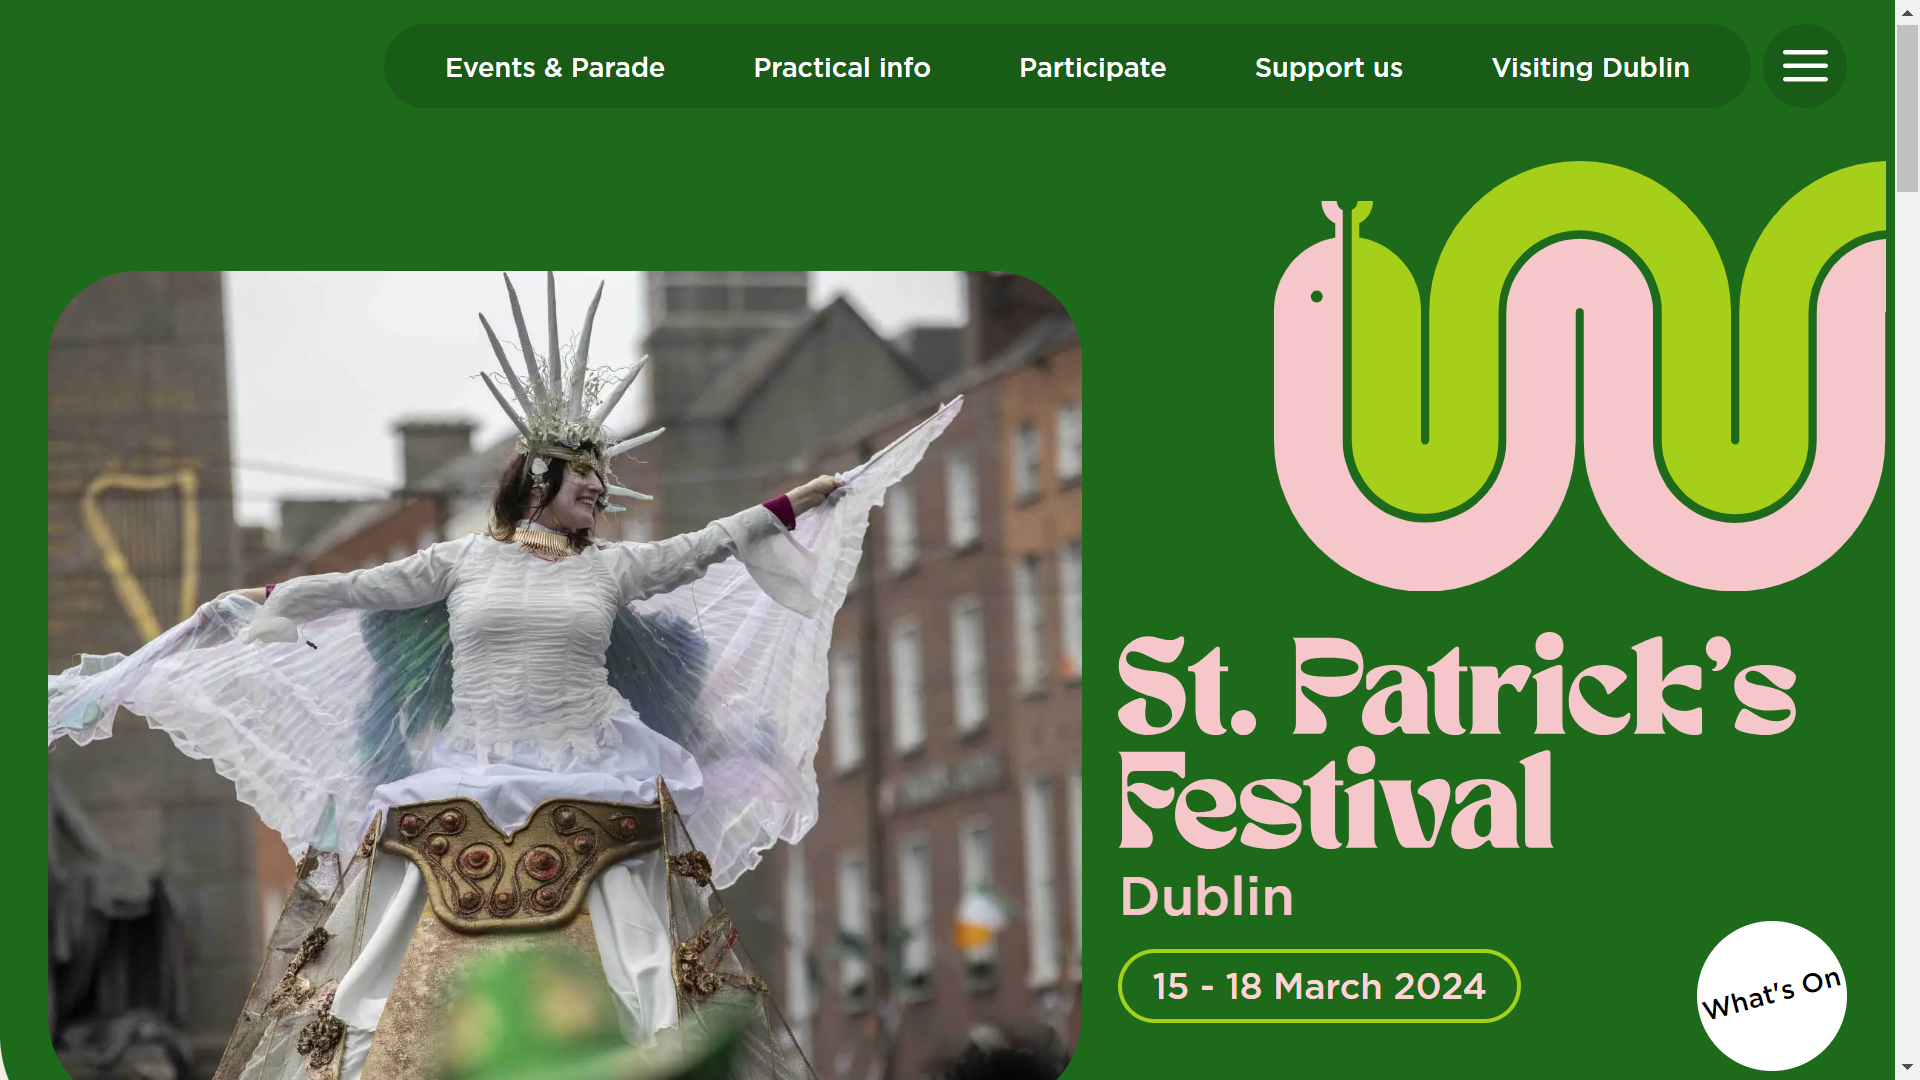 St.Patrick’s Festival in Dublin